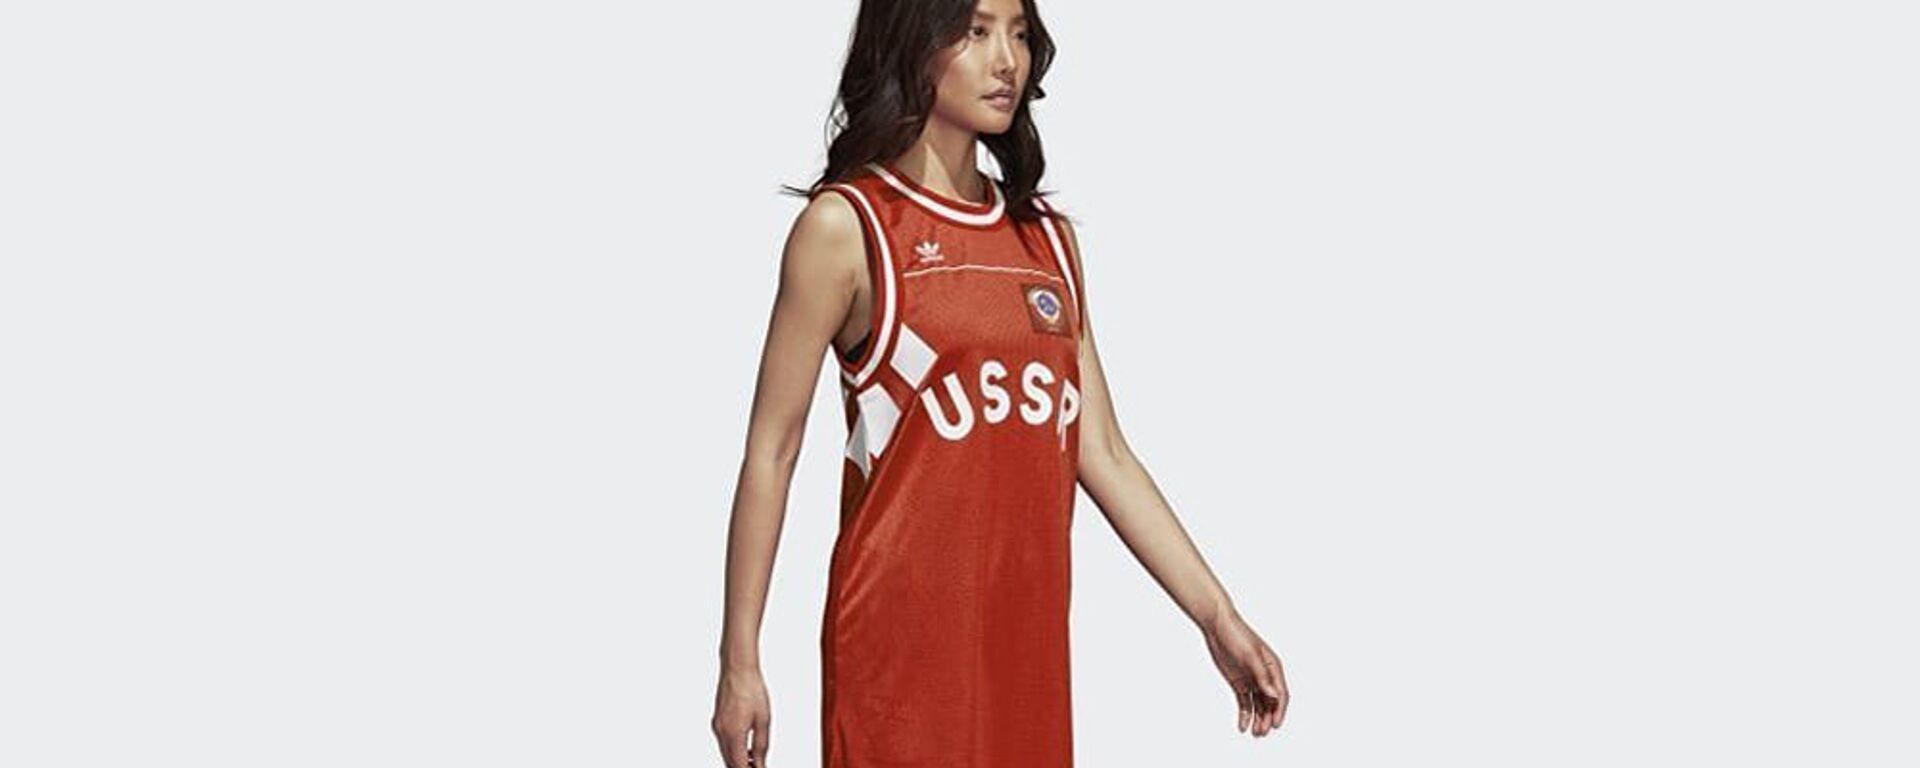 Девушка в майке с надписью USSR компании Adidas - Sputnik Латвия, 1920, 19.06.2019